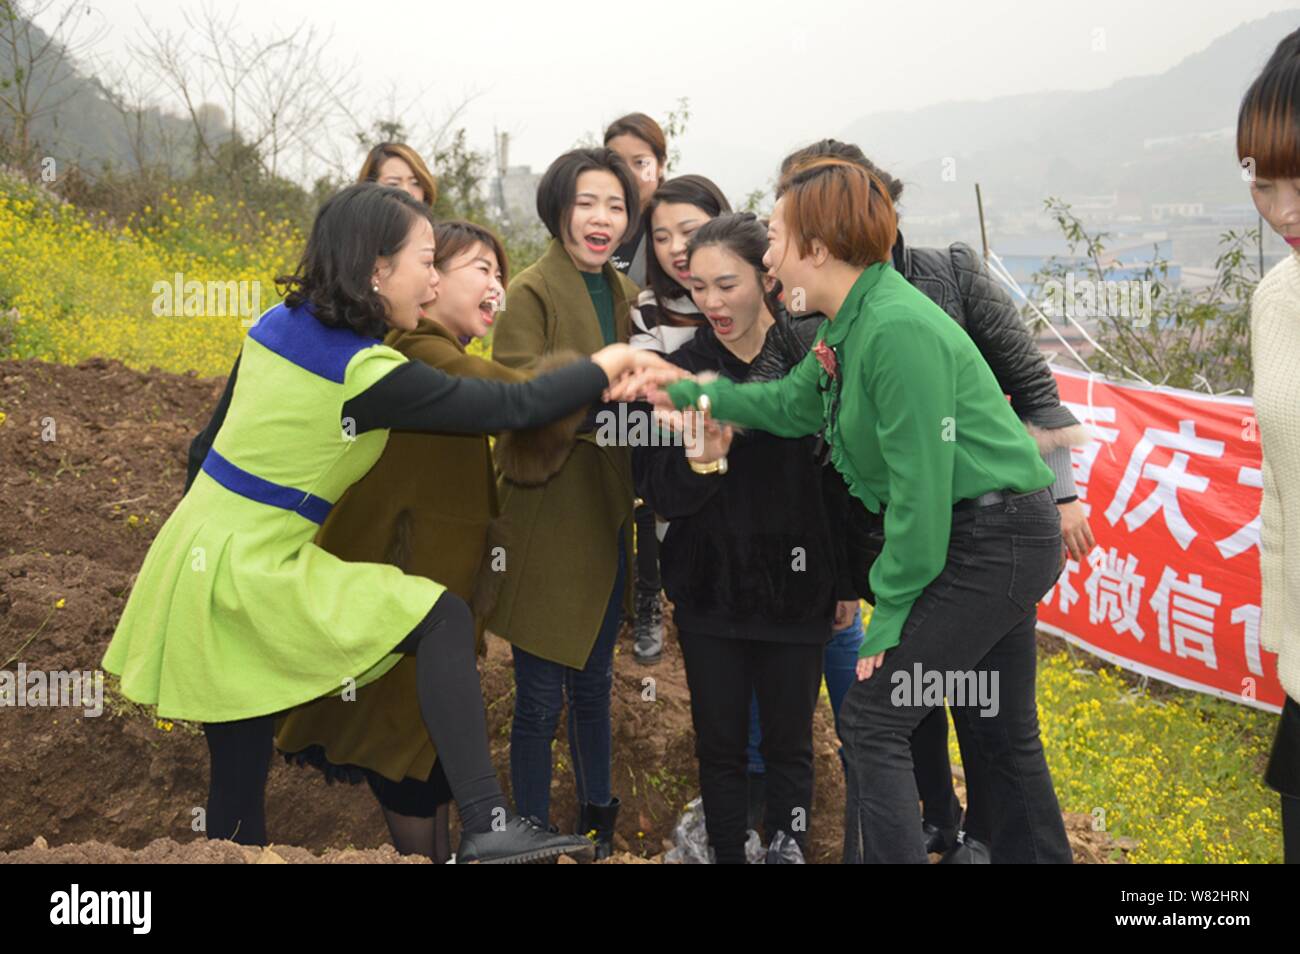 Les femmes chinoises s'applaudir après être resté dans des "tombes" au cours d'un rituel peu commun pour aider les divorcés à faire face à leur rupture du mariage dans l'out Banque D'Images